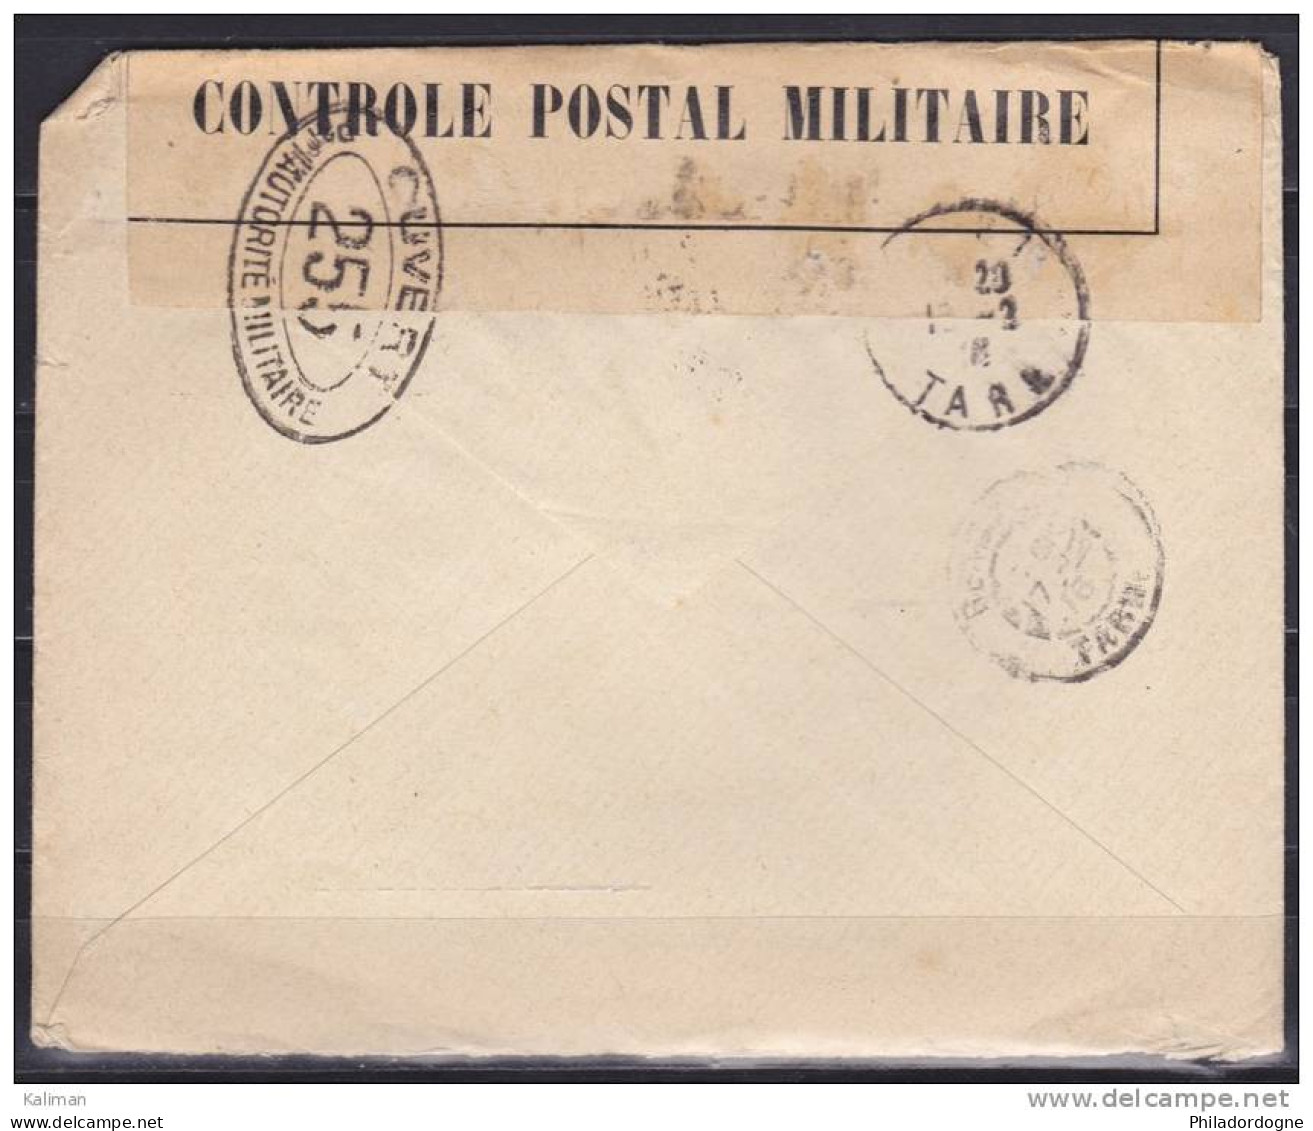 France - Enveloppe - Censure - Ouvert Par L'autorité Militaire - Agence Internationale Des Prisonniers De Guerre 1916 - Cruz Roja